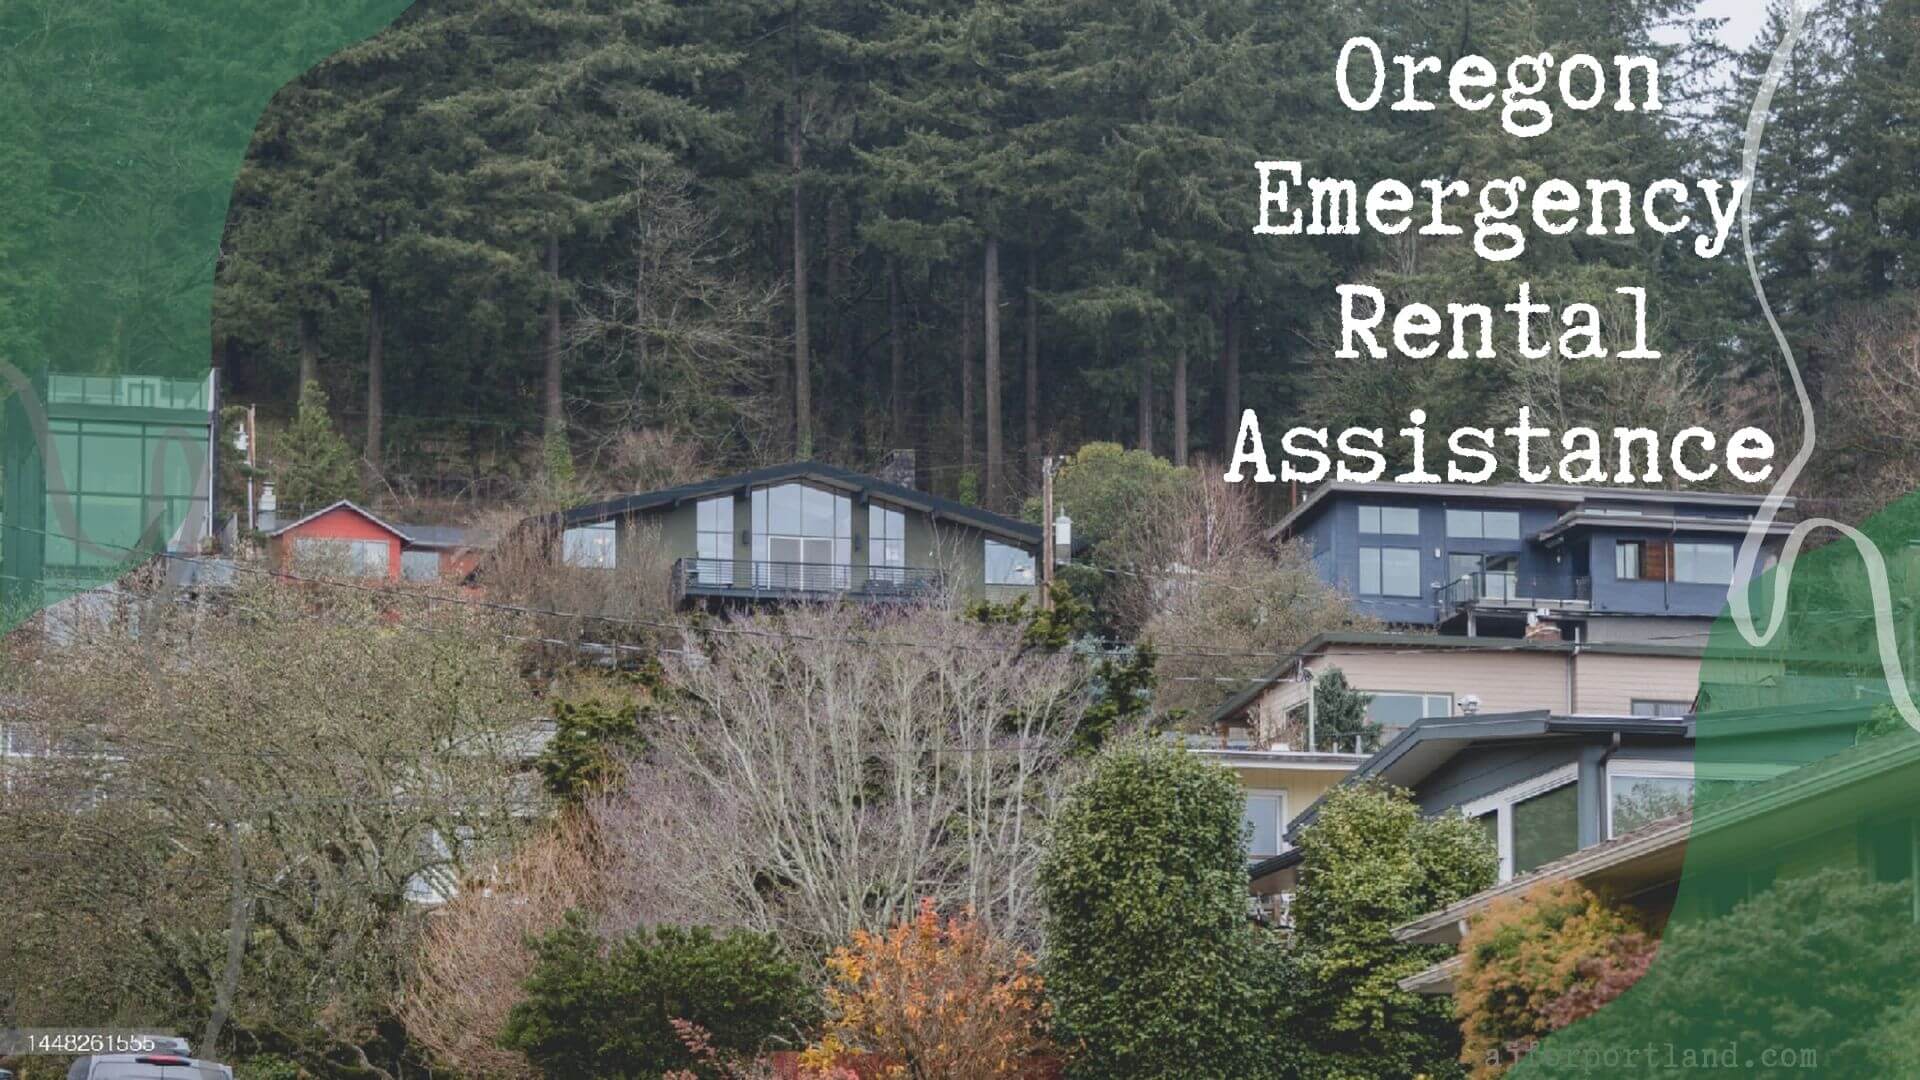 Oregon Emergency Rental Assistance